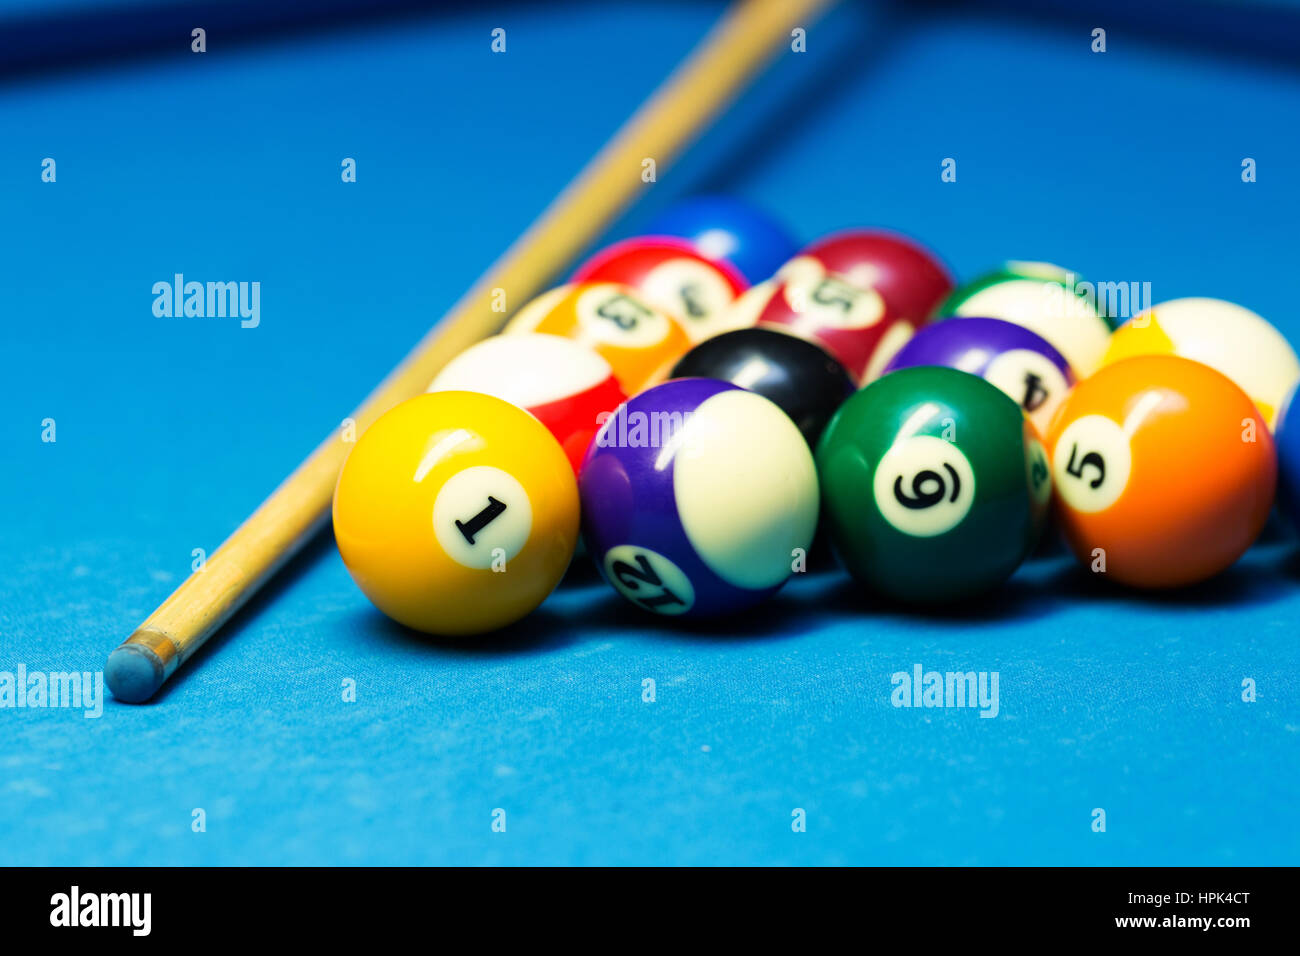 Pool-Billard-Kugeln und Cue auf dem blauen Tuch Tisch Stockfoto